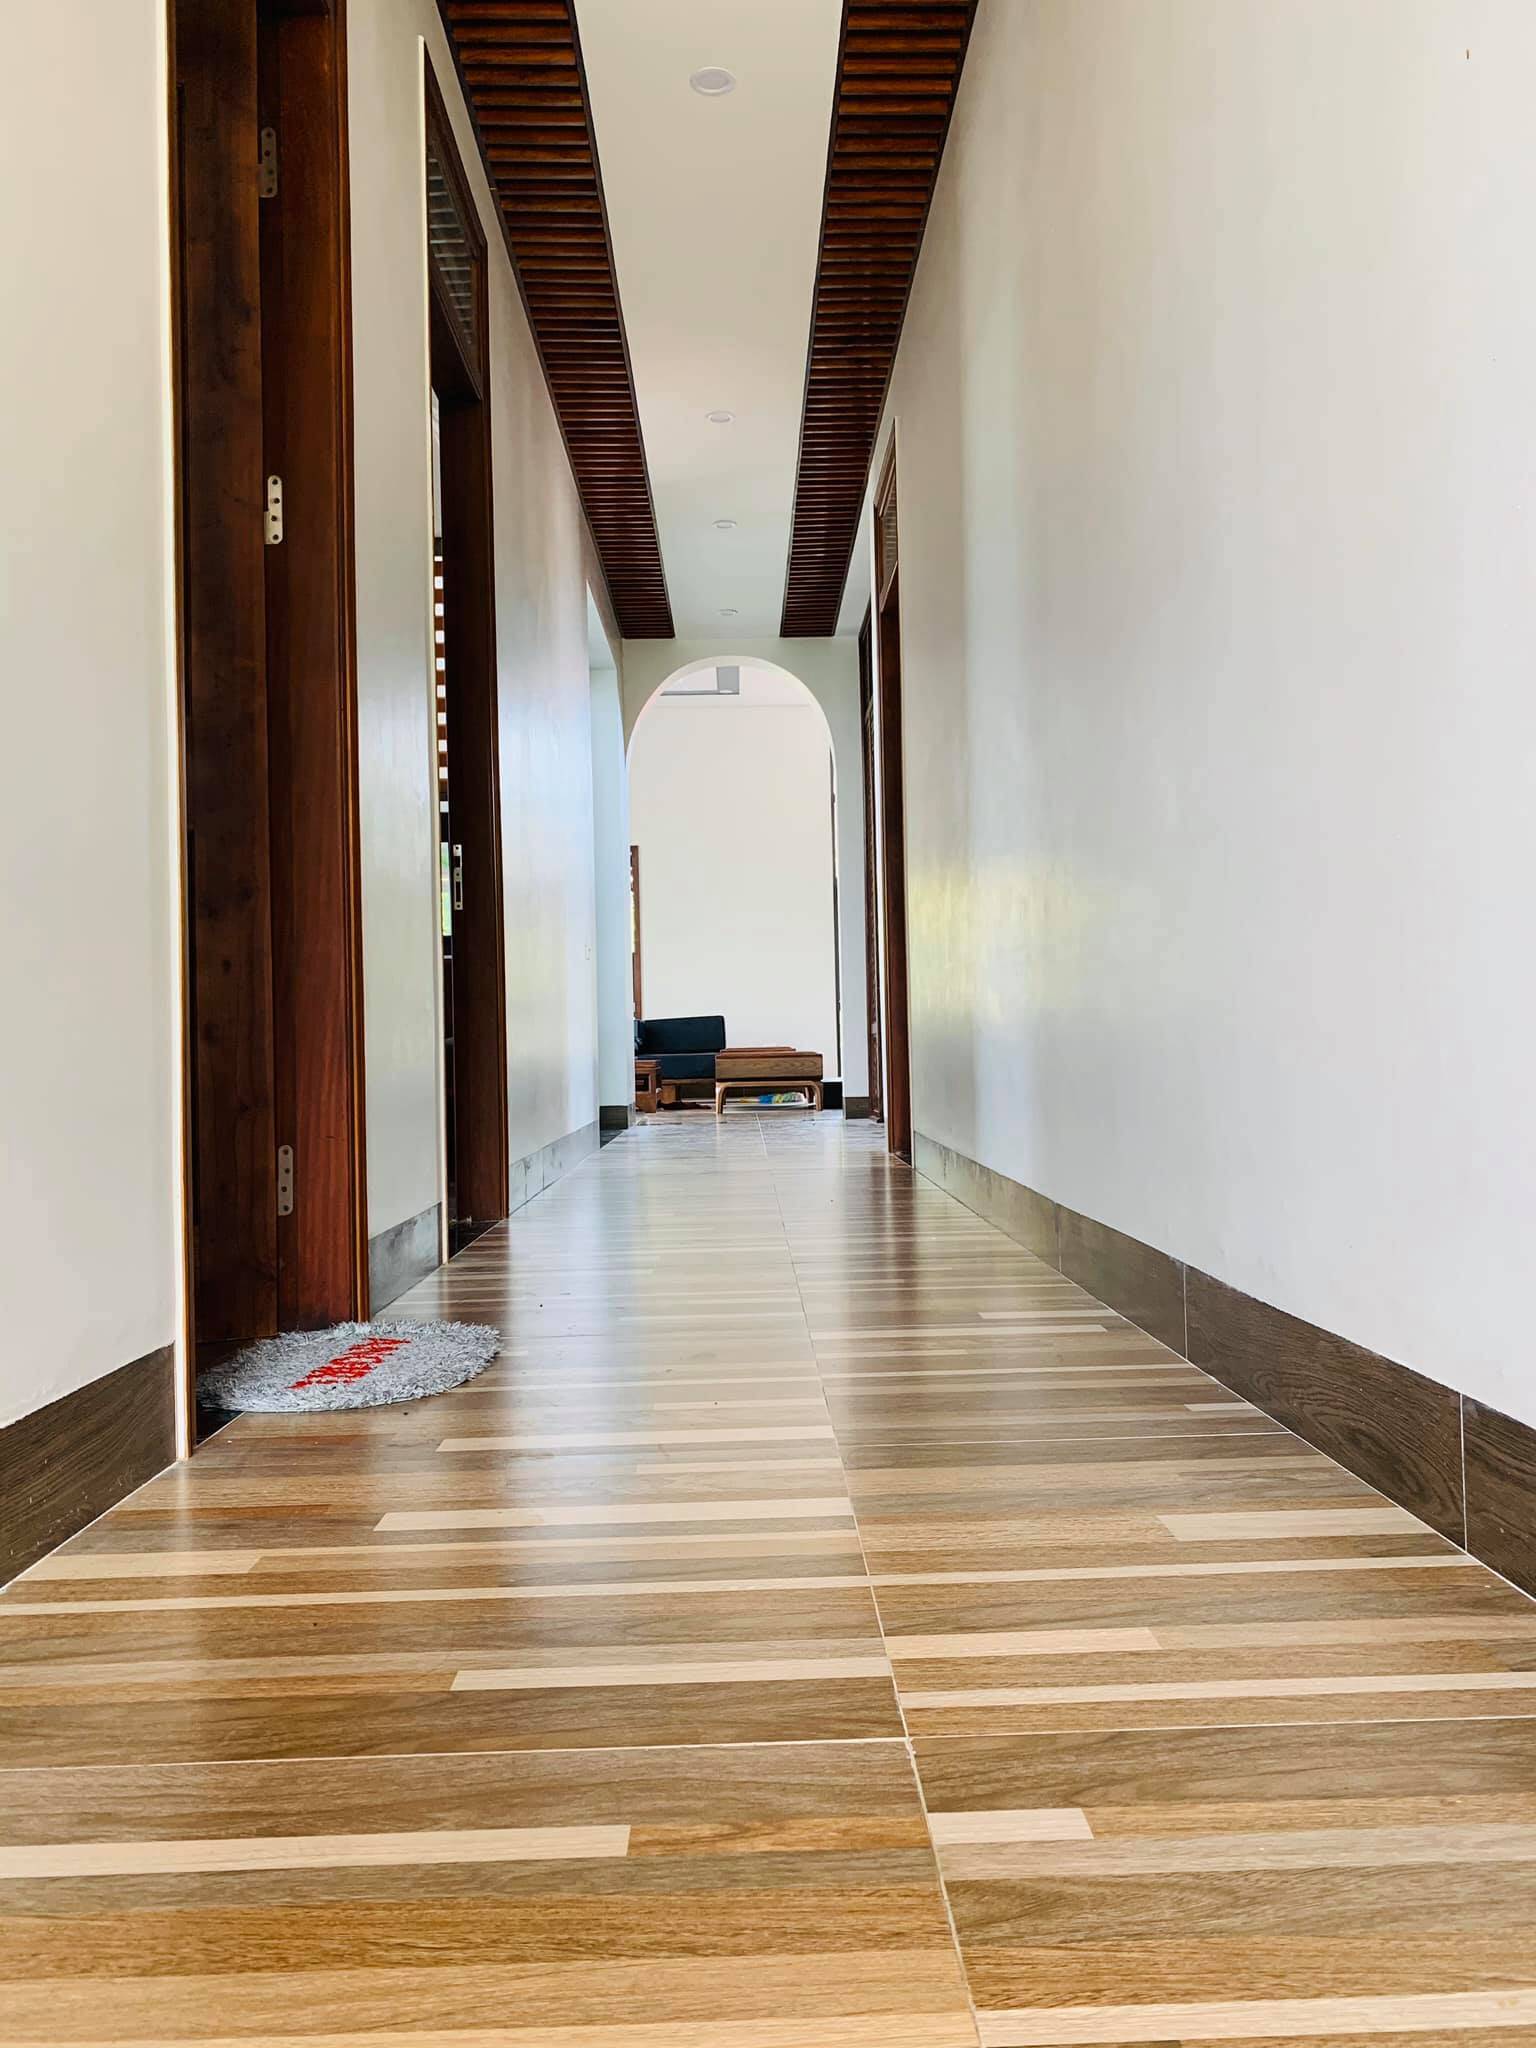 Hành lang bên trong của ngôi nhà được ốp gạch giả gỗ vừa tiết kiệm chi phí mà vẫn đẹp mắt .